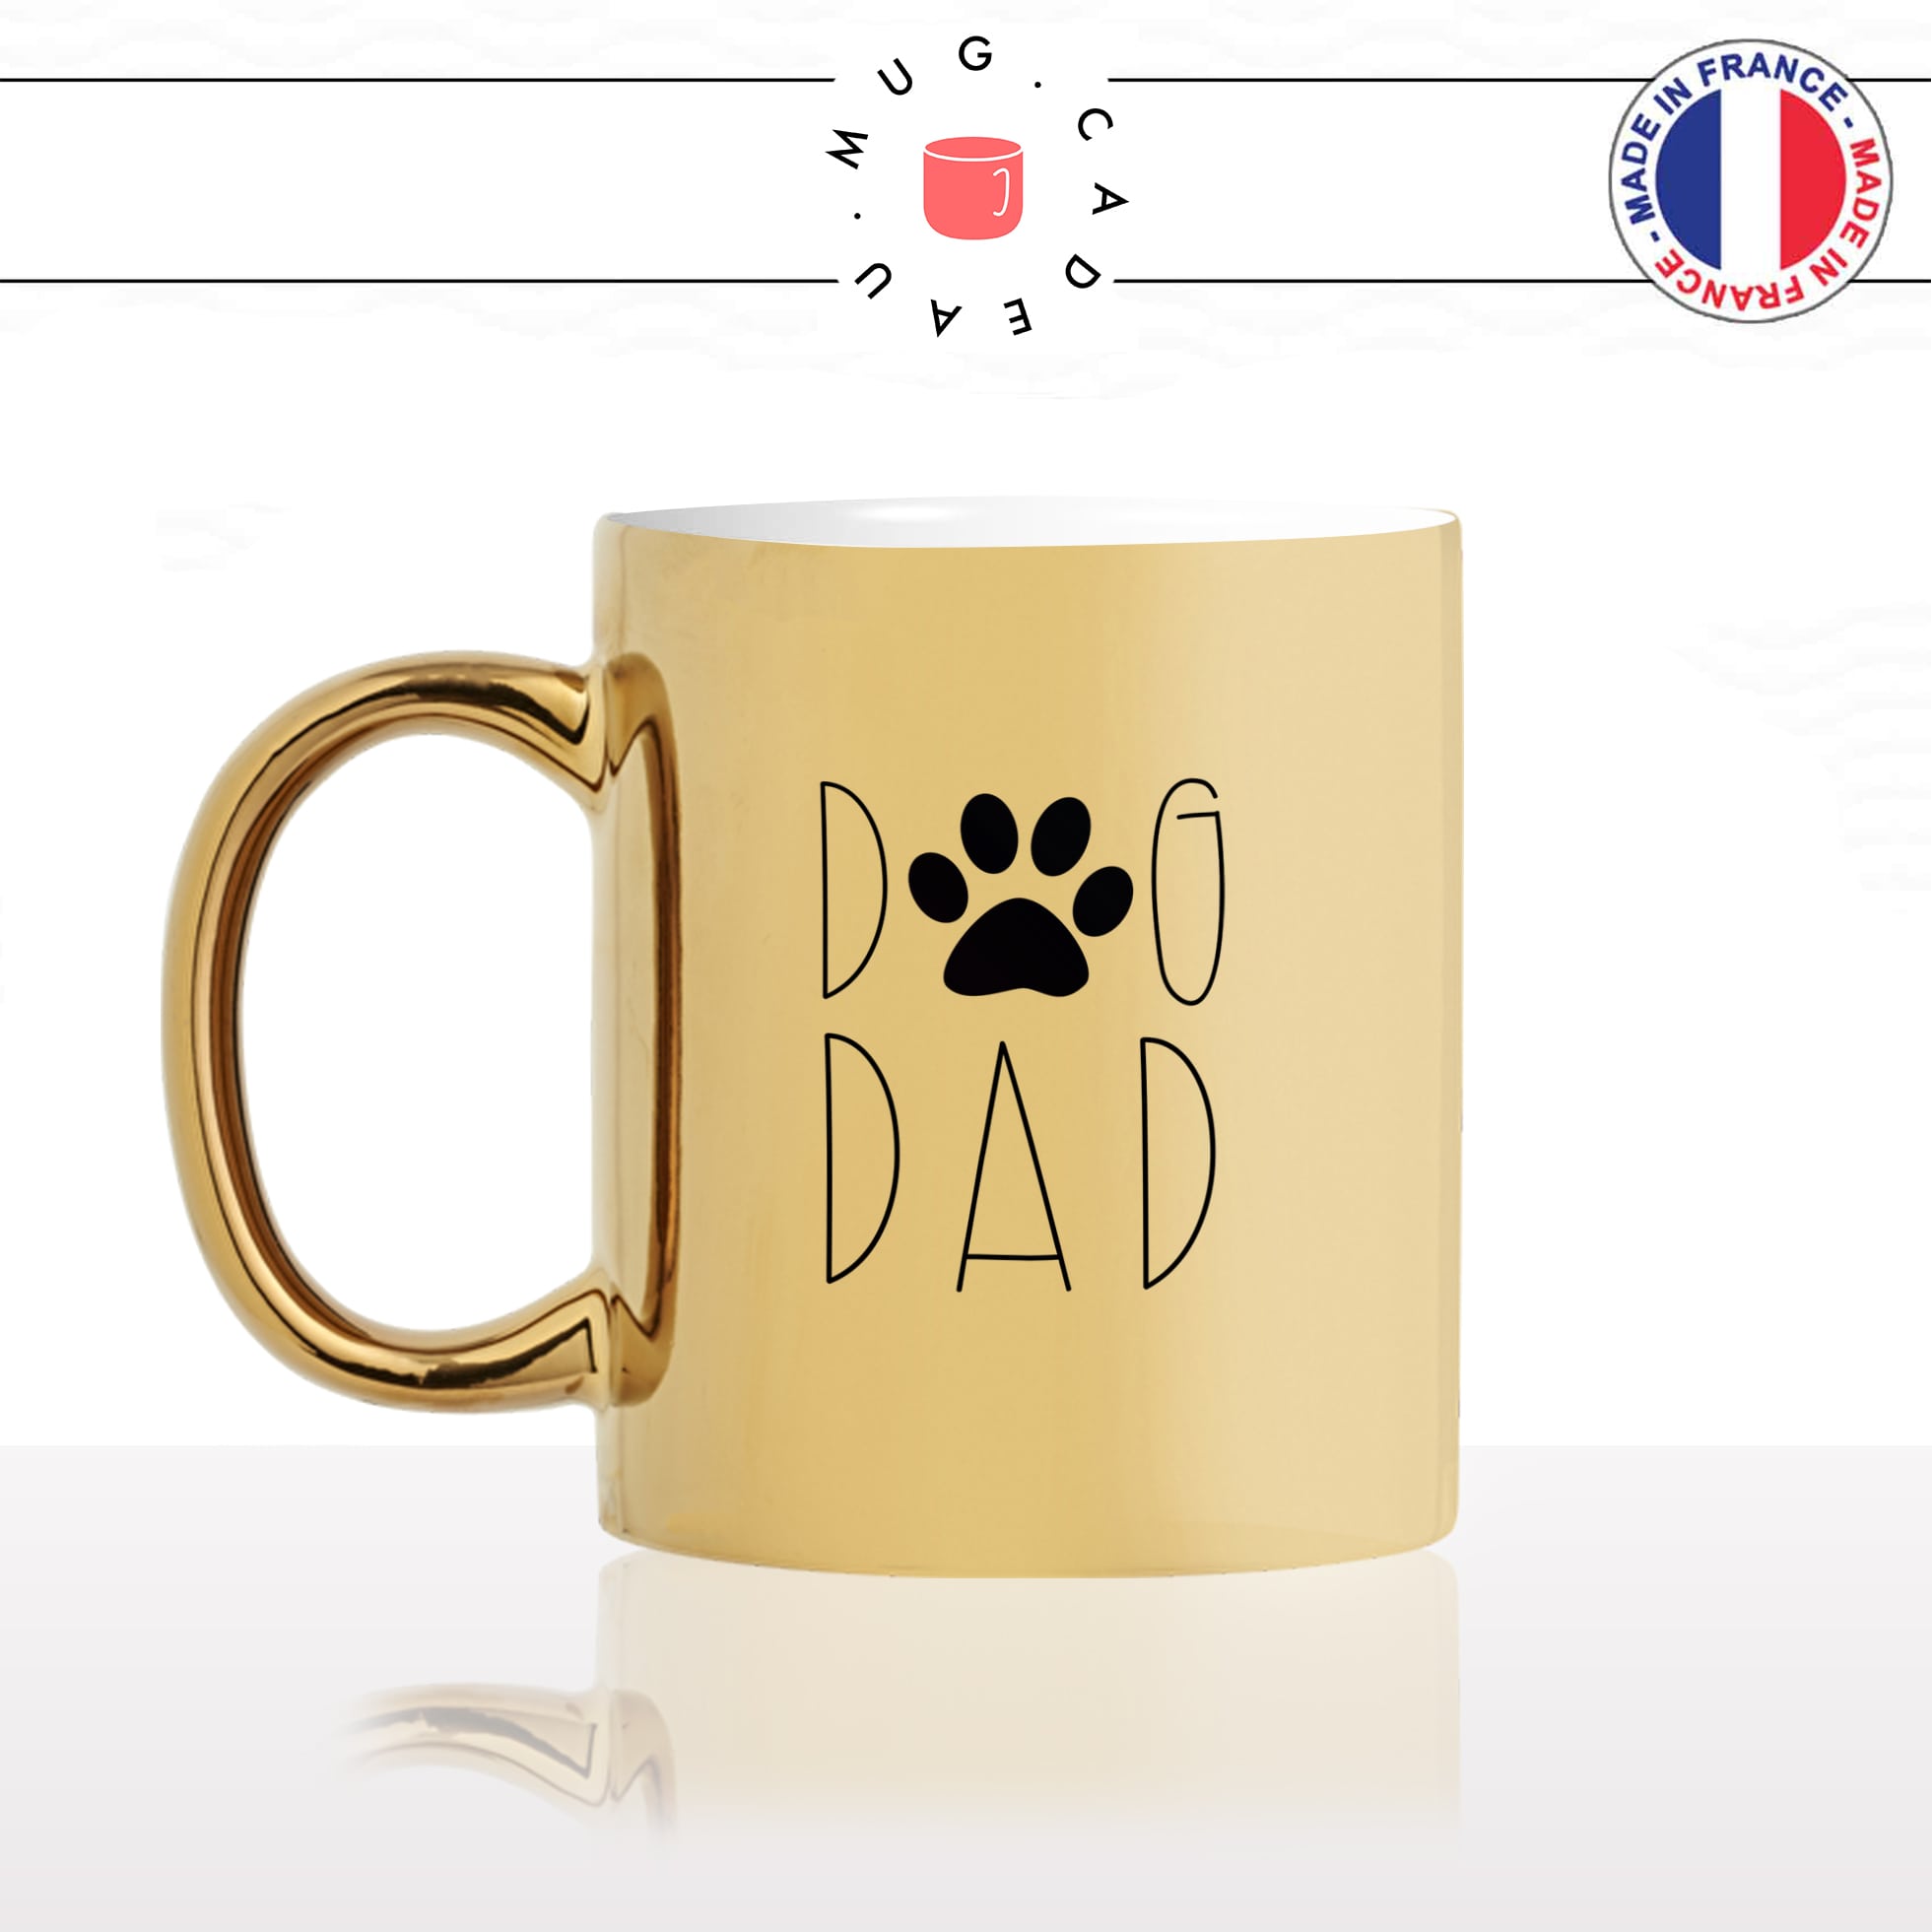 mug-tasse-or-doré-dog-dad-papa-chien-patte-amour-mignon-animal-chiot-noir-fun-café-thé-idée-cadeau-original-personnalisé-gold-min